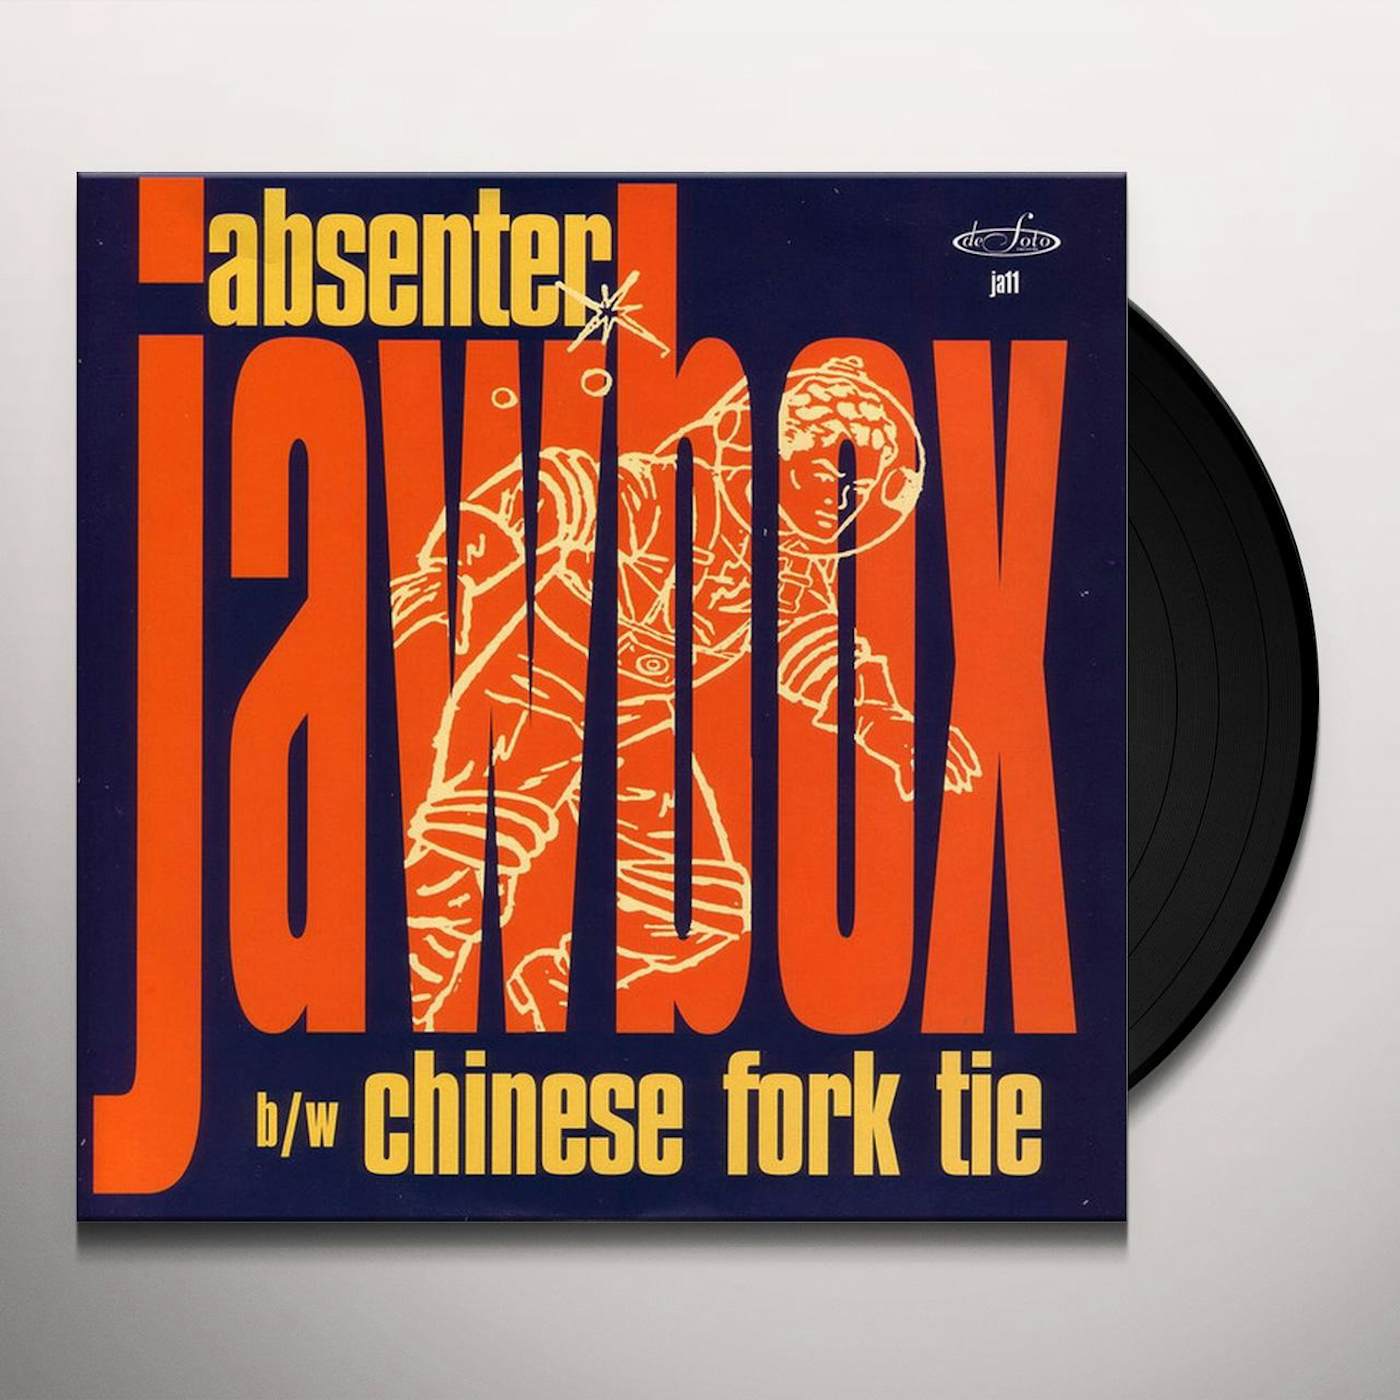 Jawbox ABSENTER / CHINESE FORKTIE Vinyl Record